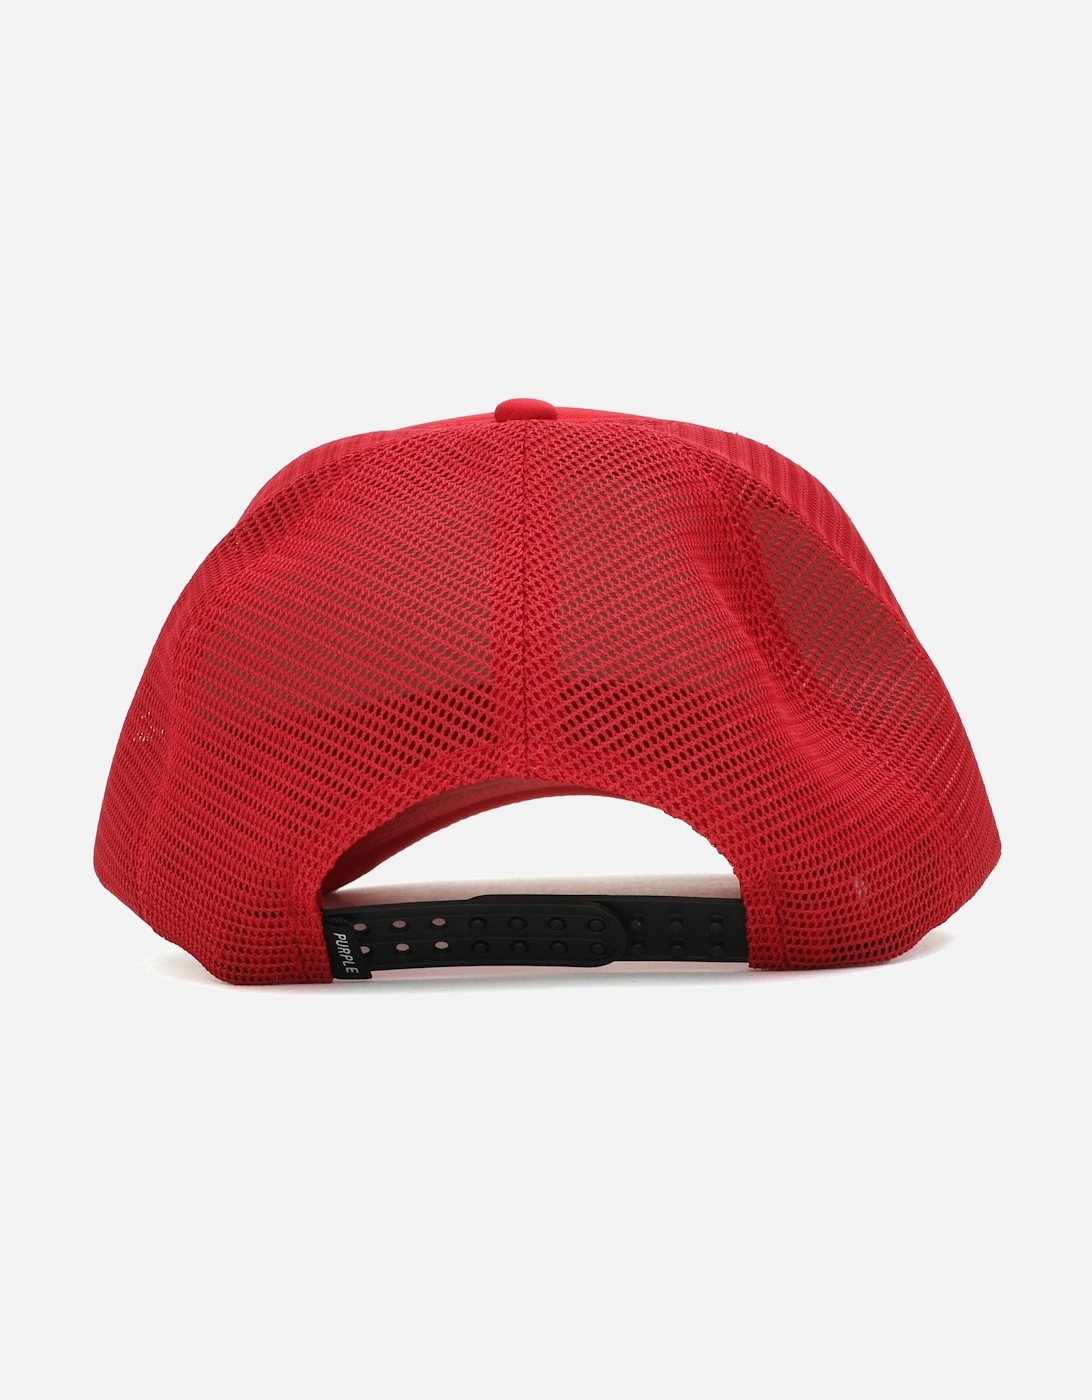 Foamtrucker Red Cap